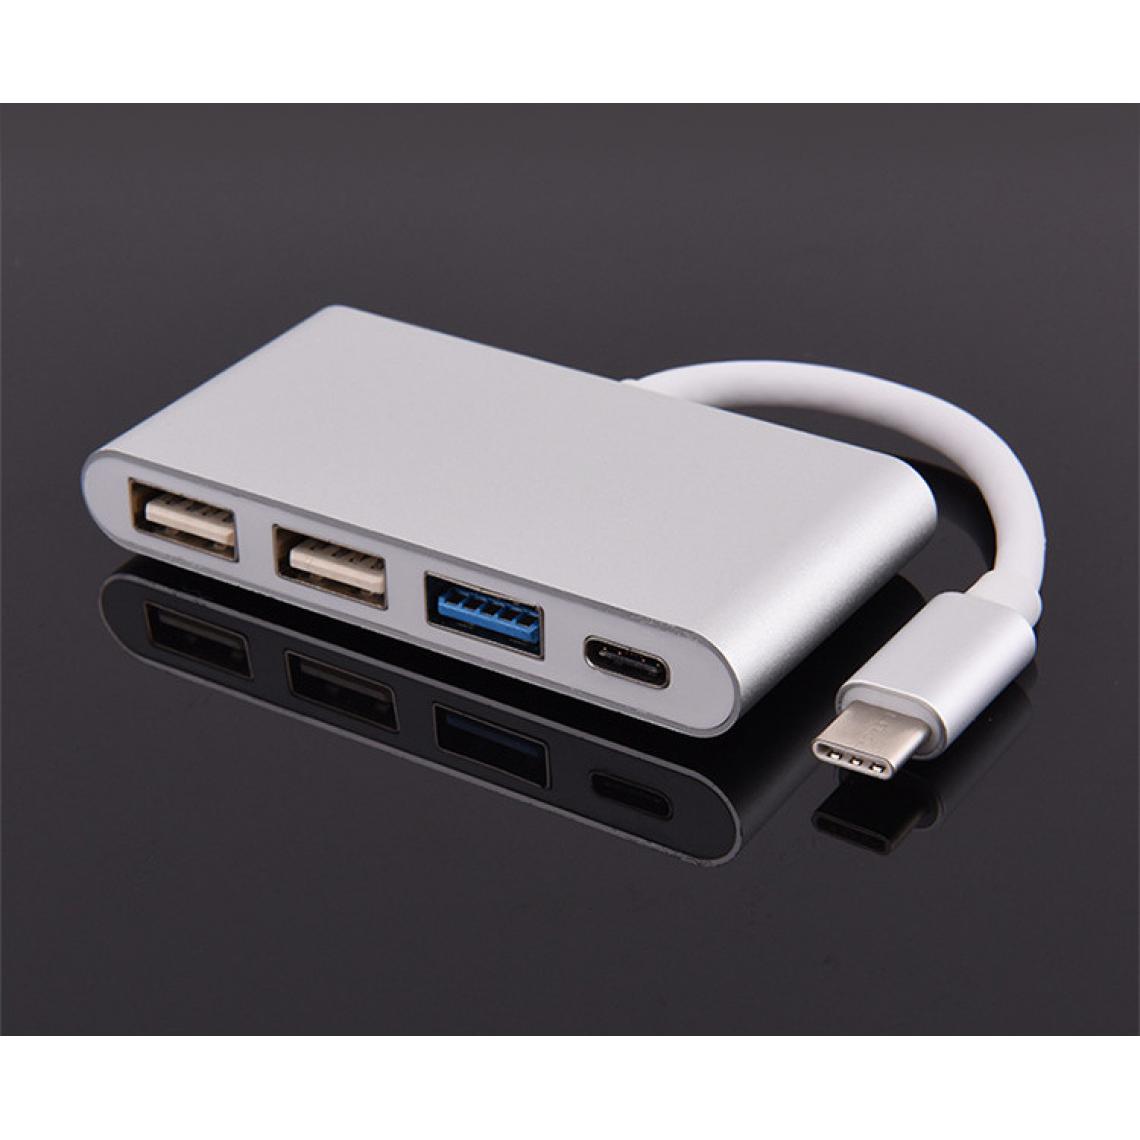 Shot - Multi Adaptateur 4 en 1 Type C pour XIAOMI Mi 9 SE Smartphone Hub 2 ports USB 2.0 1 Port USB 3.0 (ARGENT) - Hub